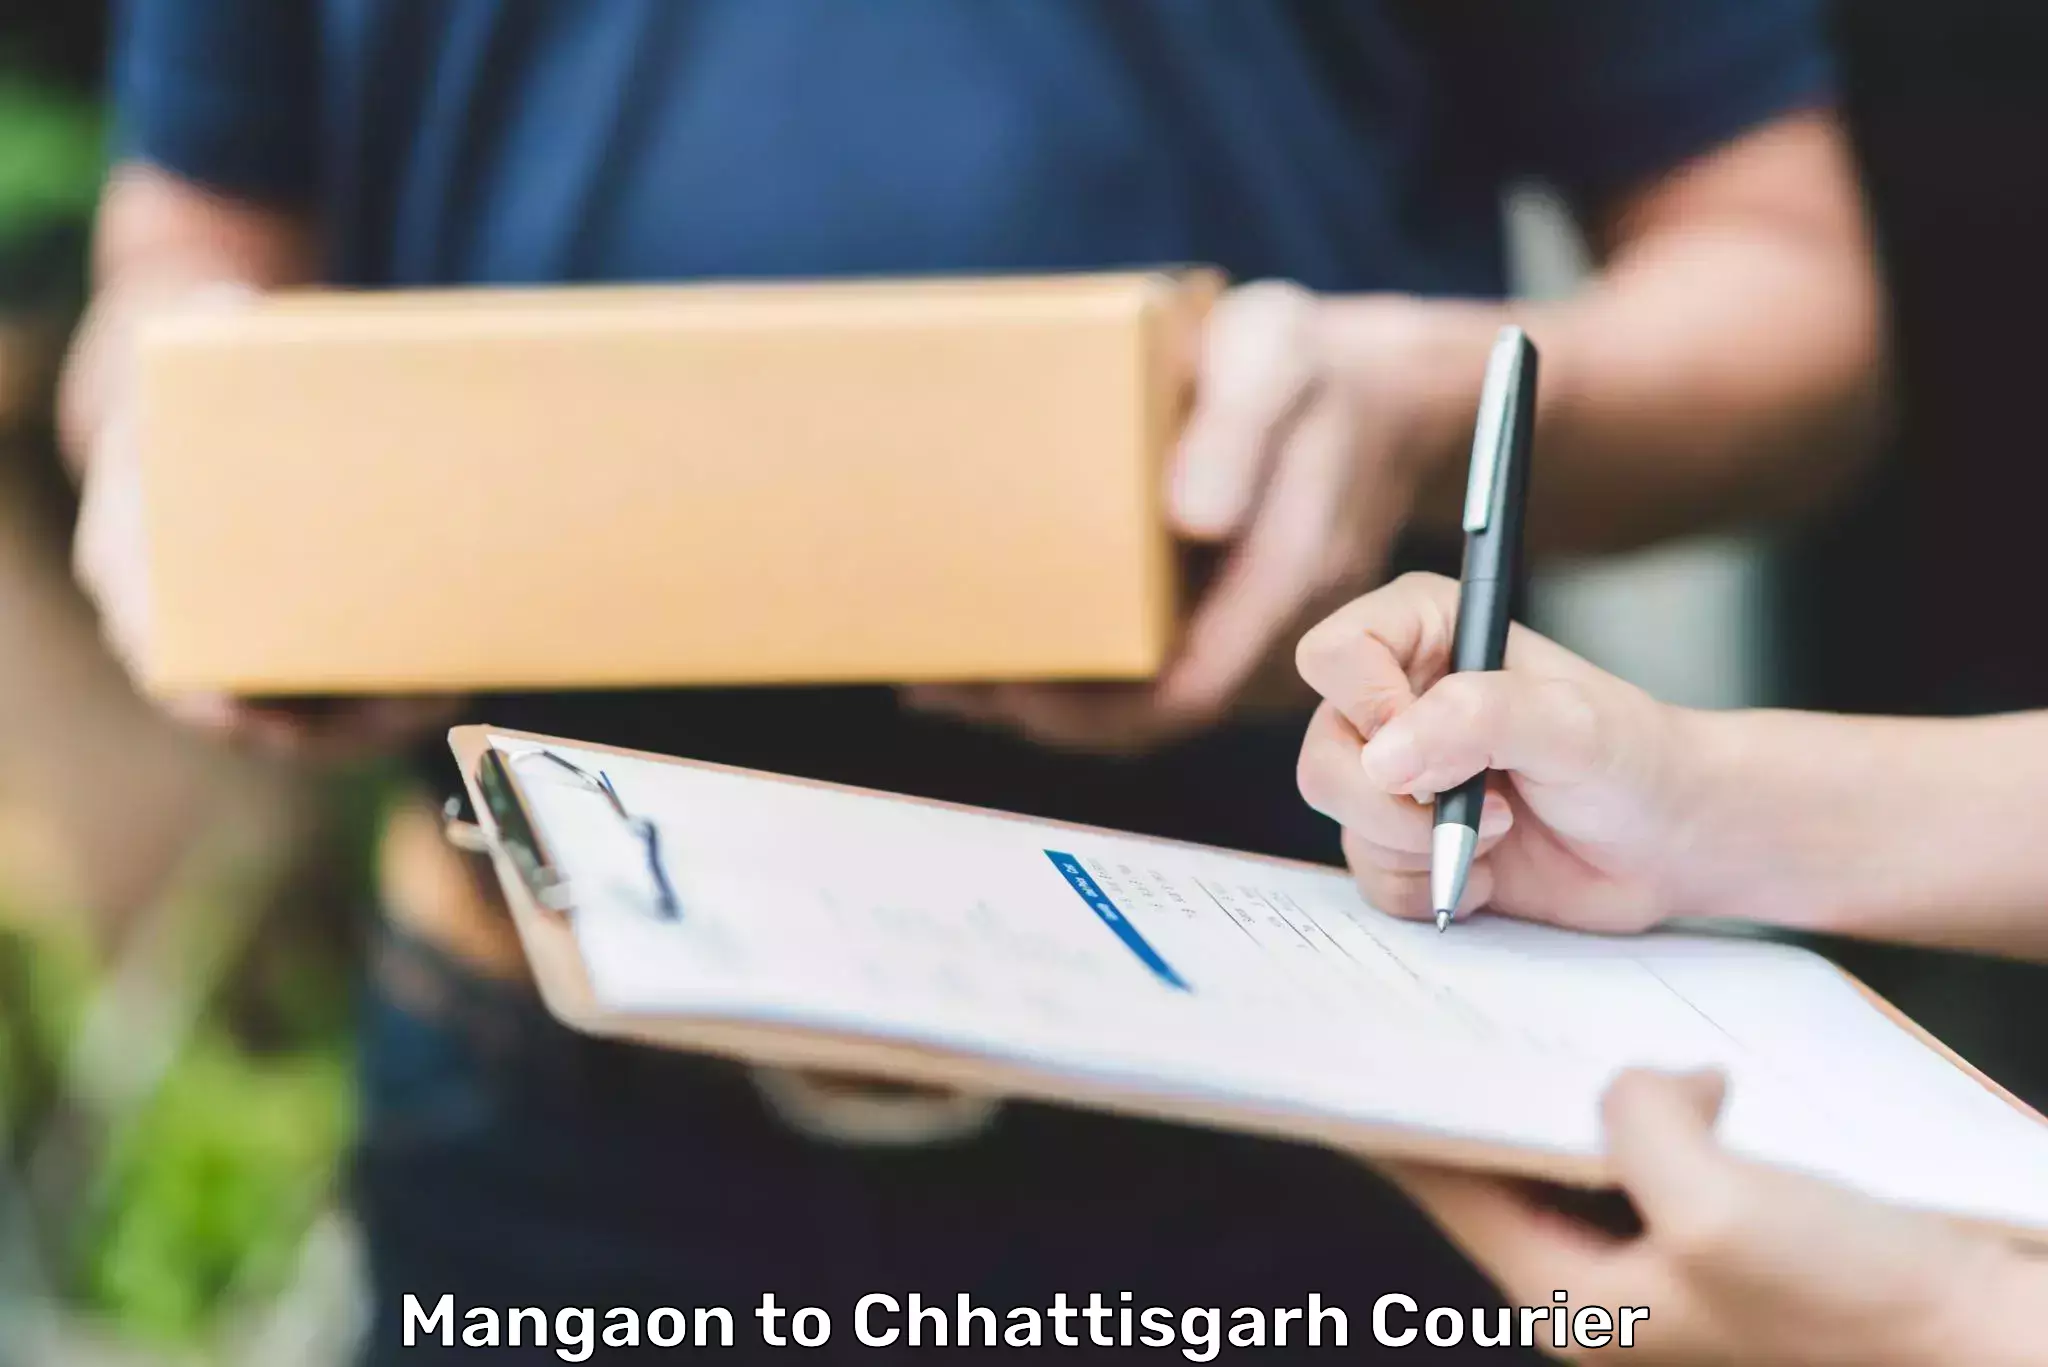 Smart shipping technology Mangaon to Chhattisgarh